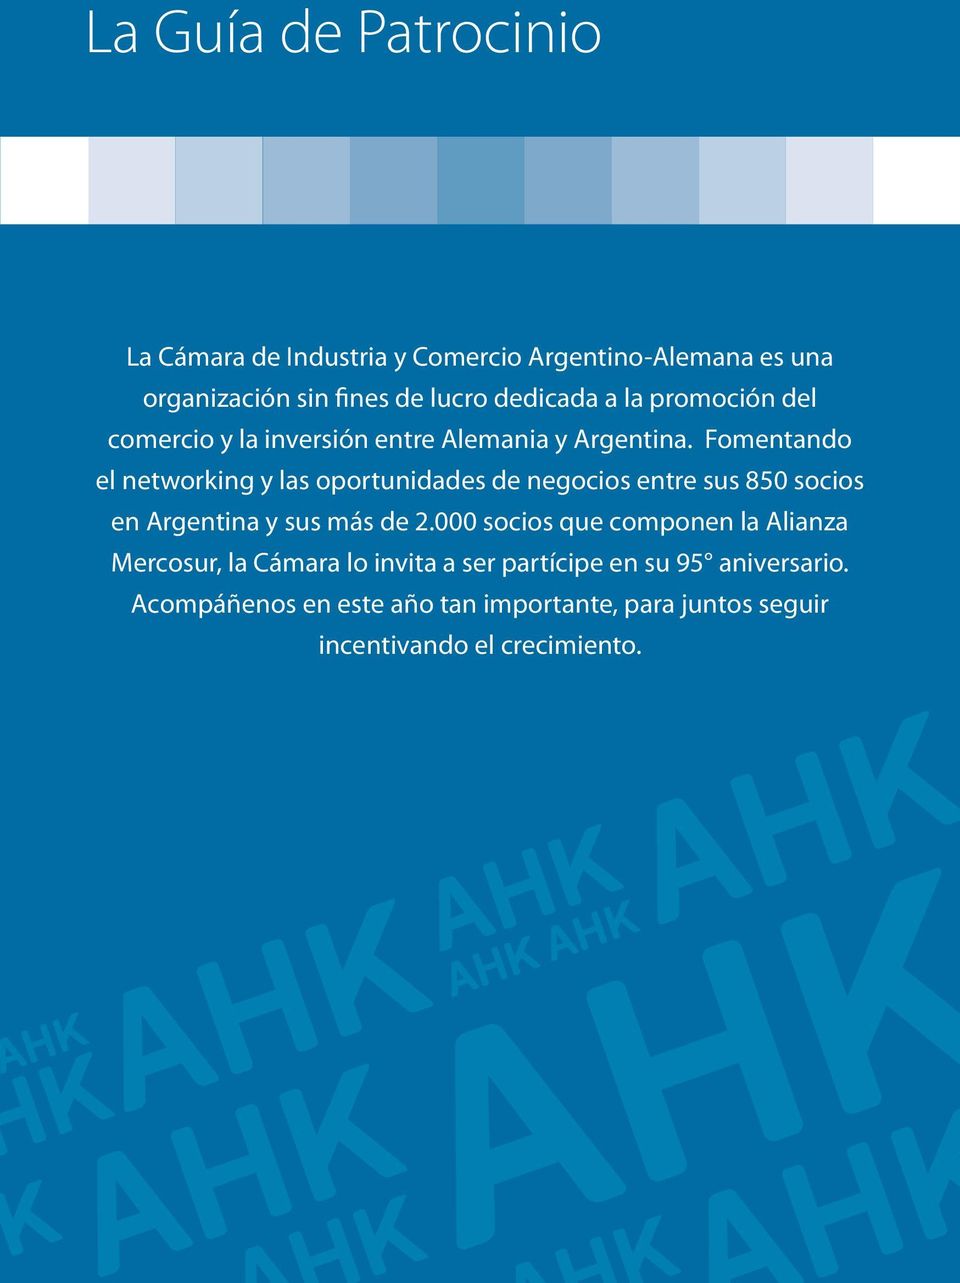 Fomentando el networking y las oportunidades de negocios entre sus 850 socios en Argentina y sus más de 2.